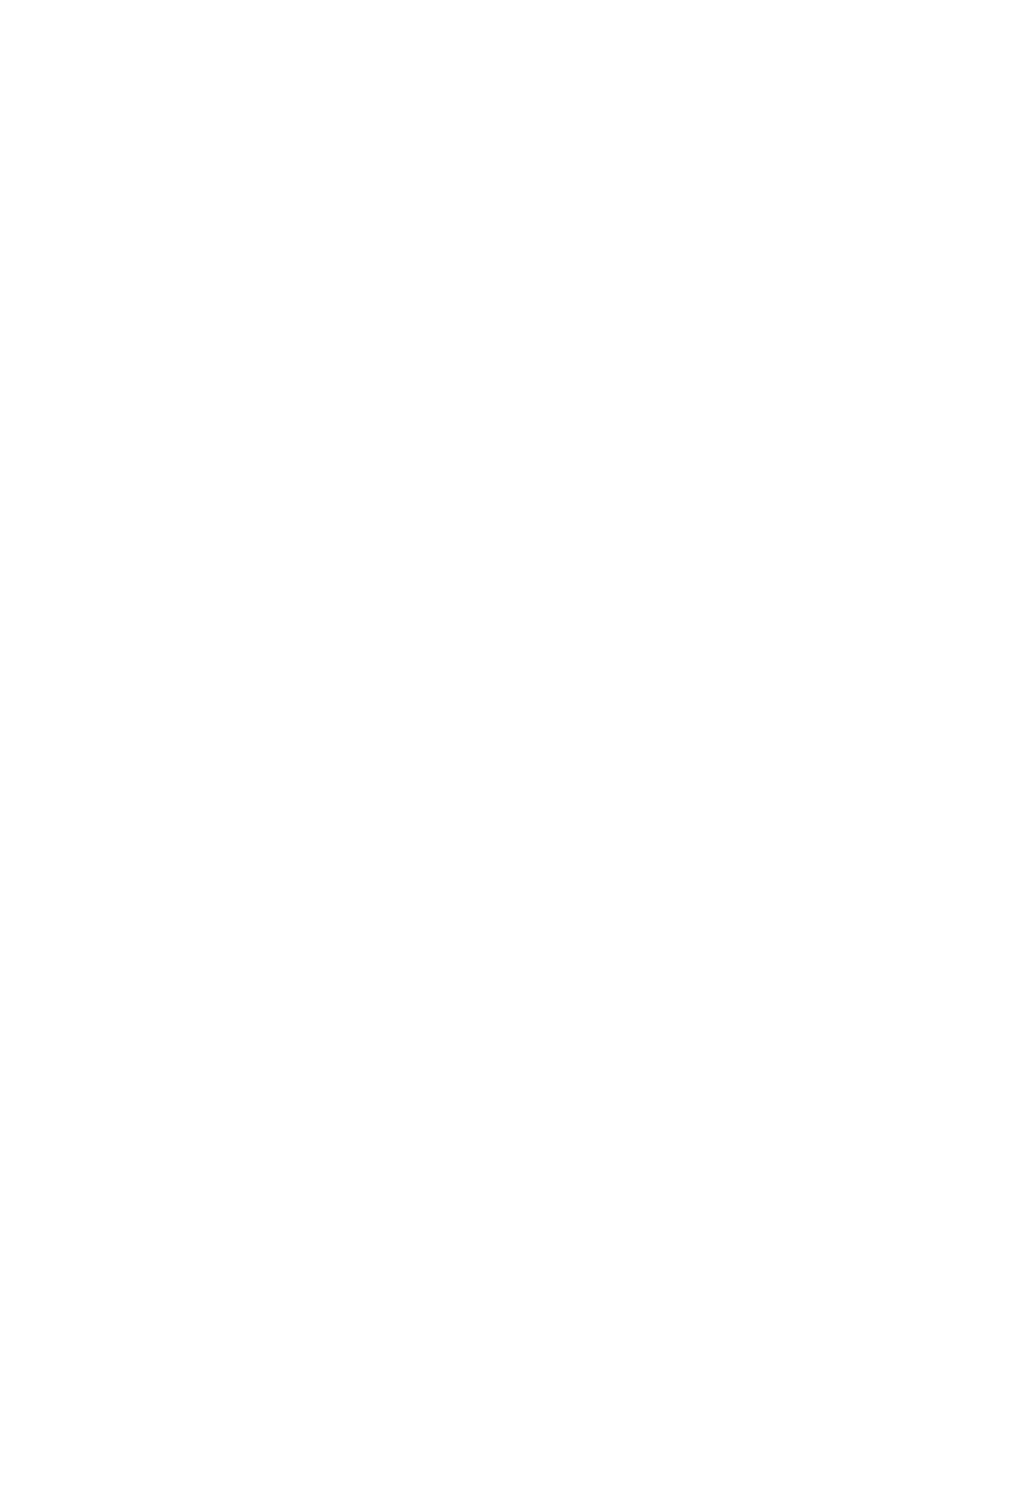 FADABRAV WHITE